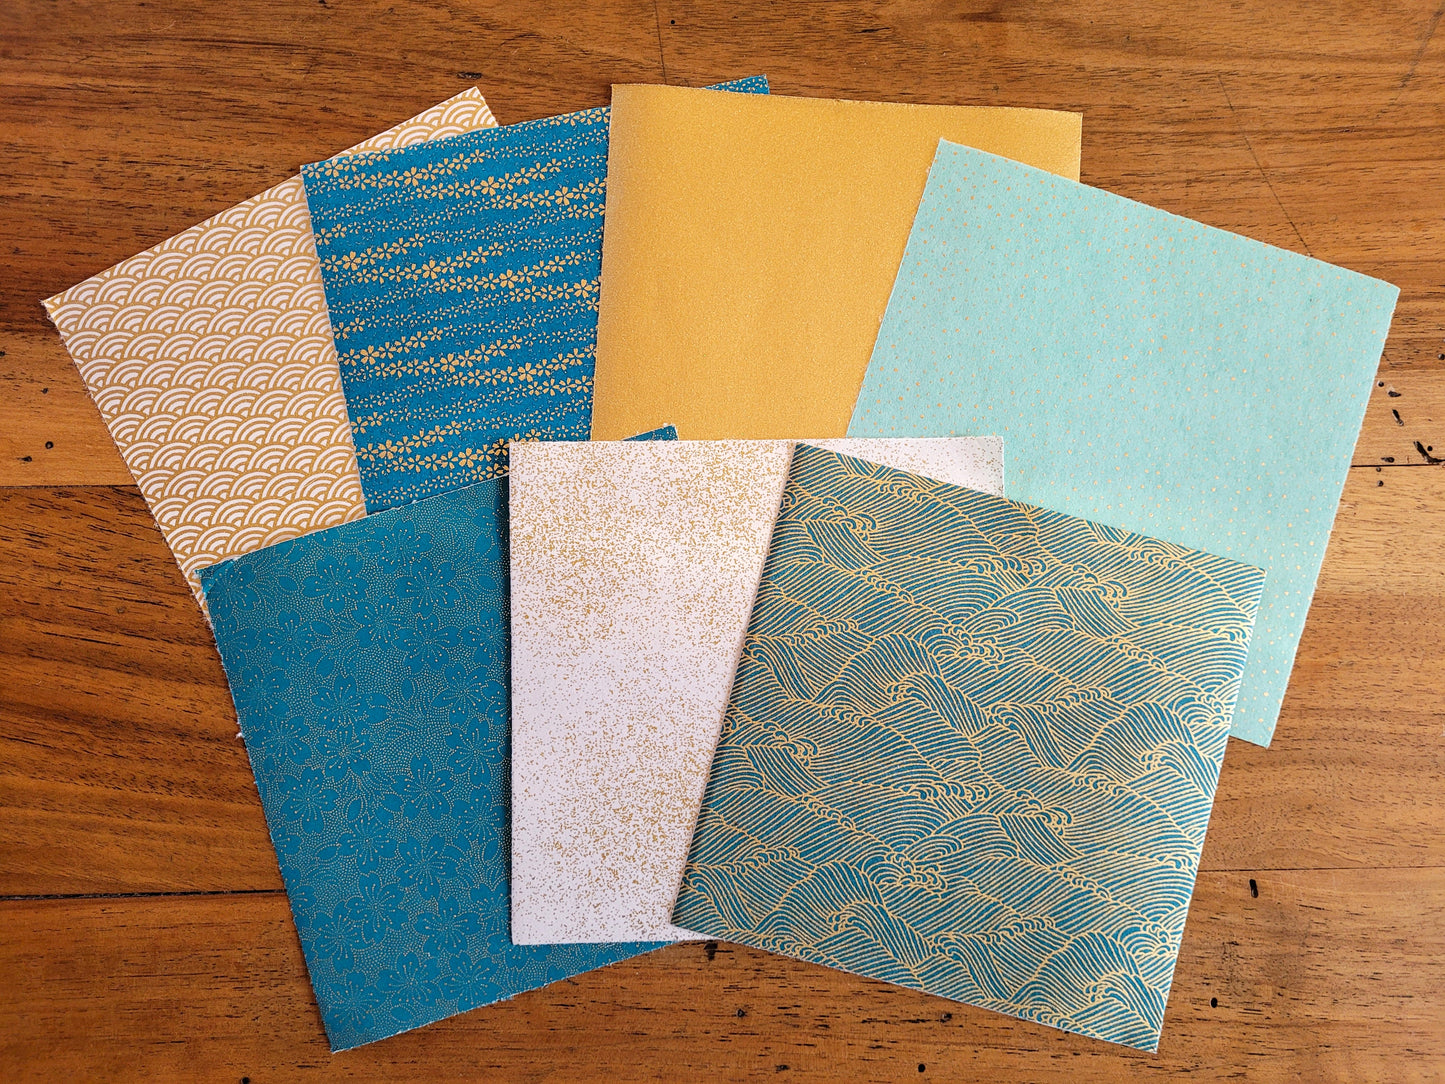 Kit de 7 papiers origami japonais - "Paon" - Bleu canard, blanc, doré